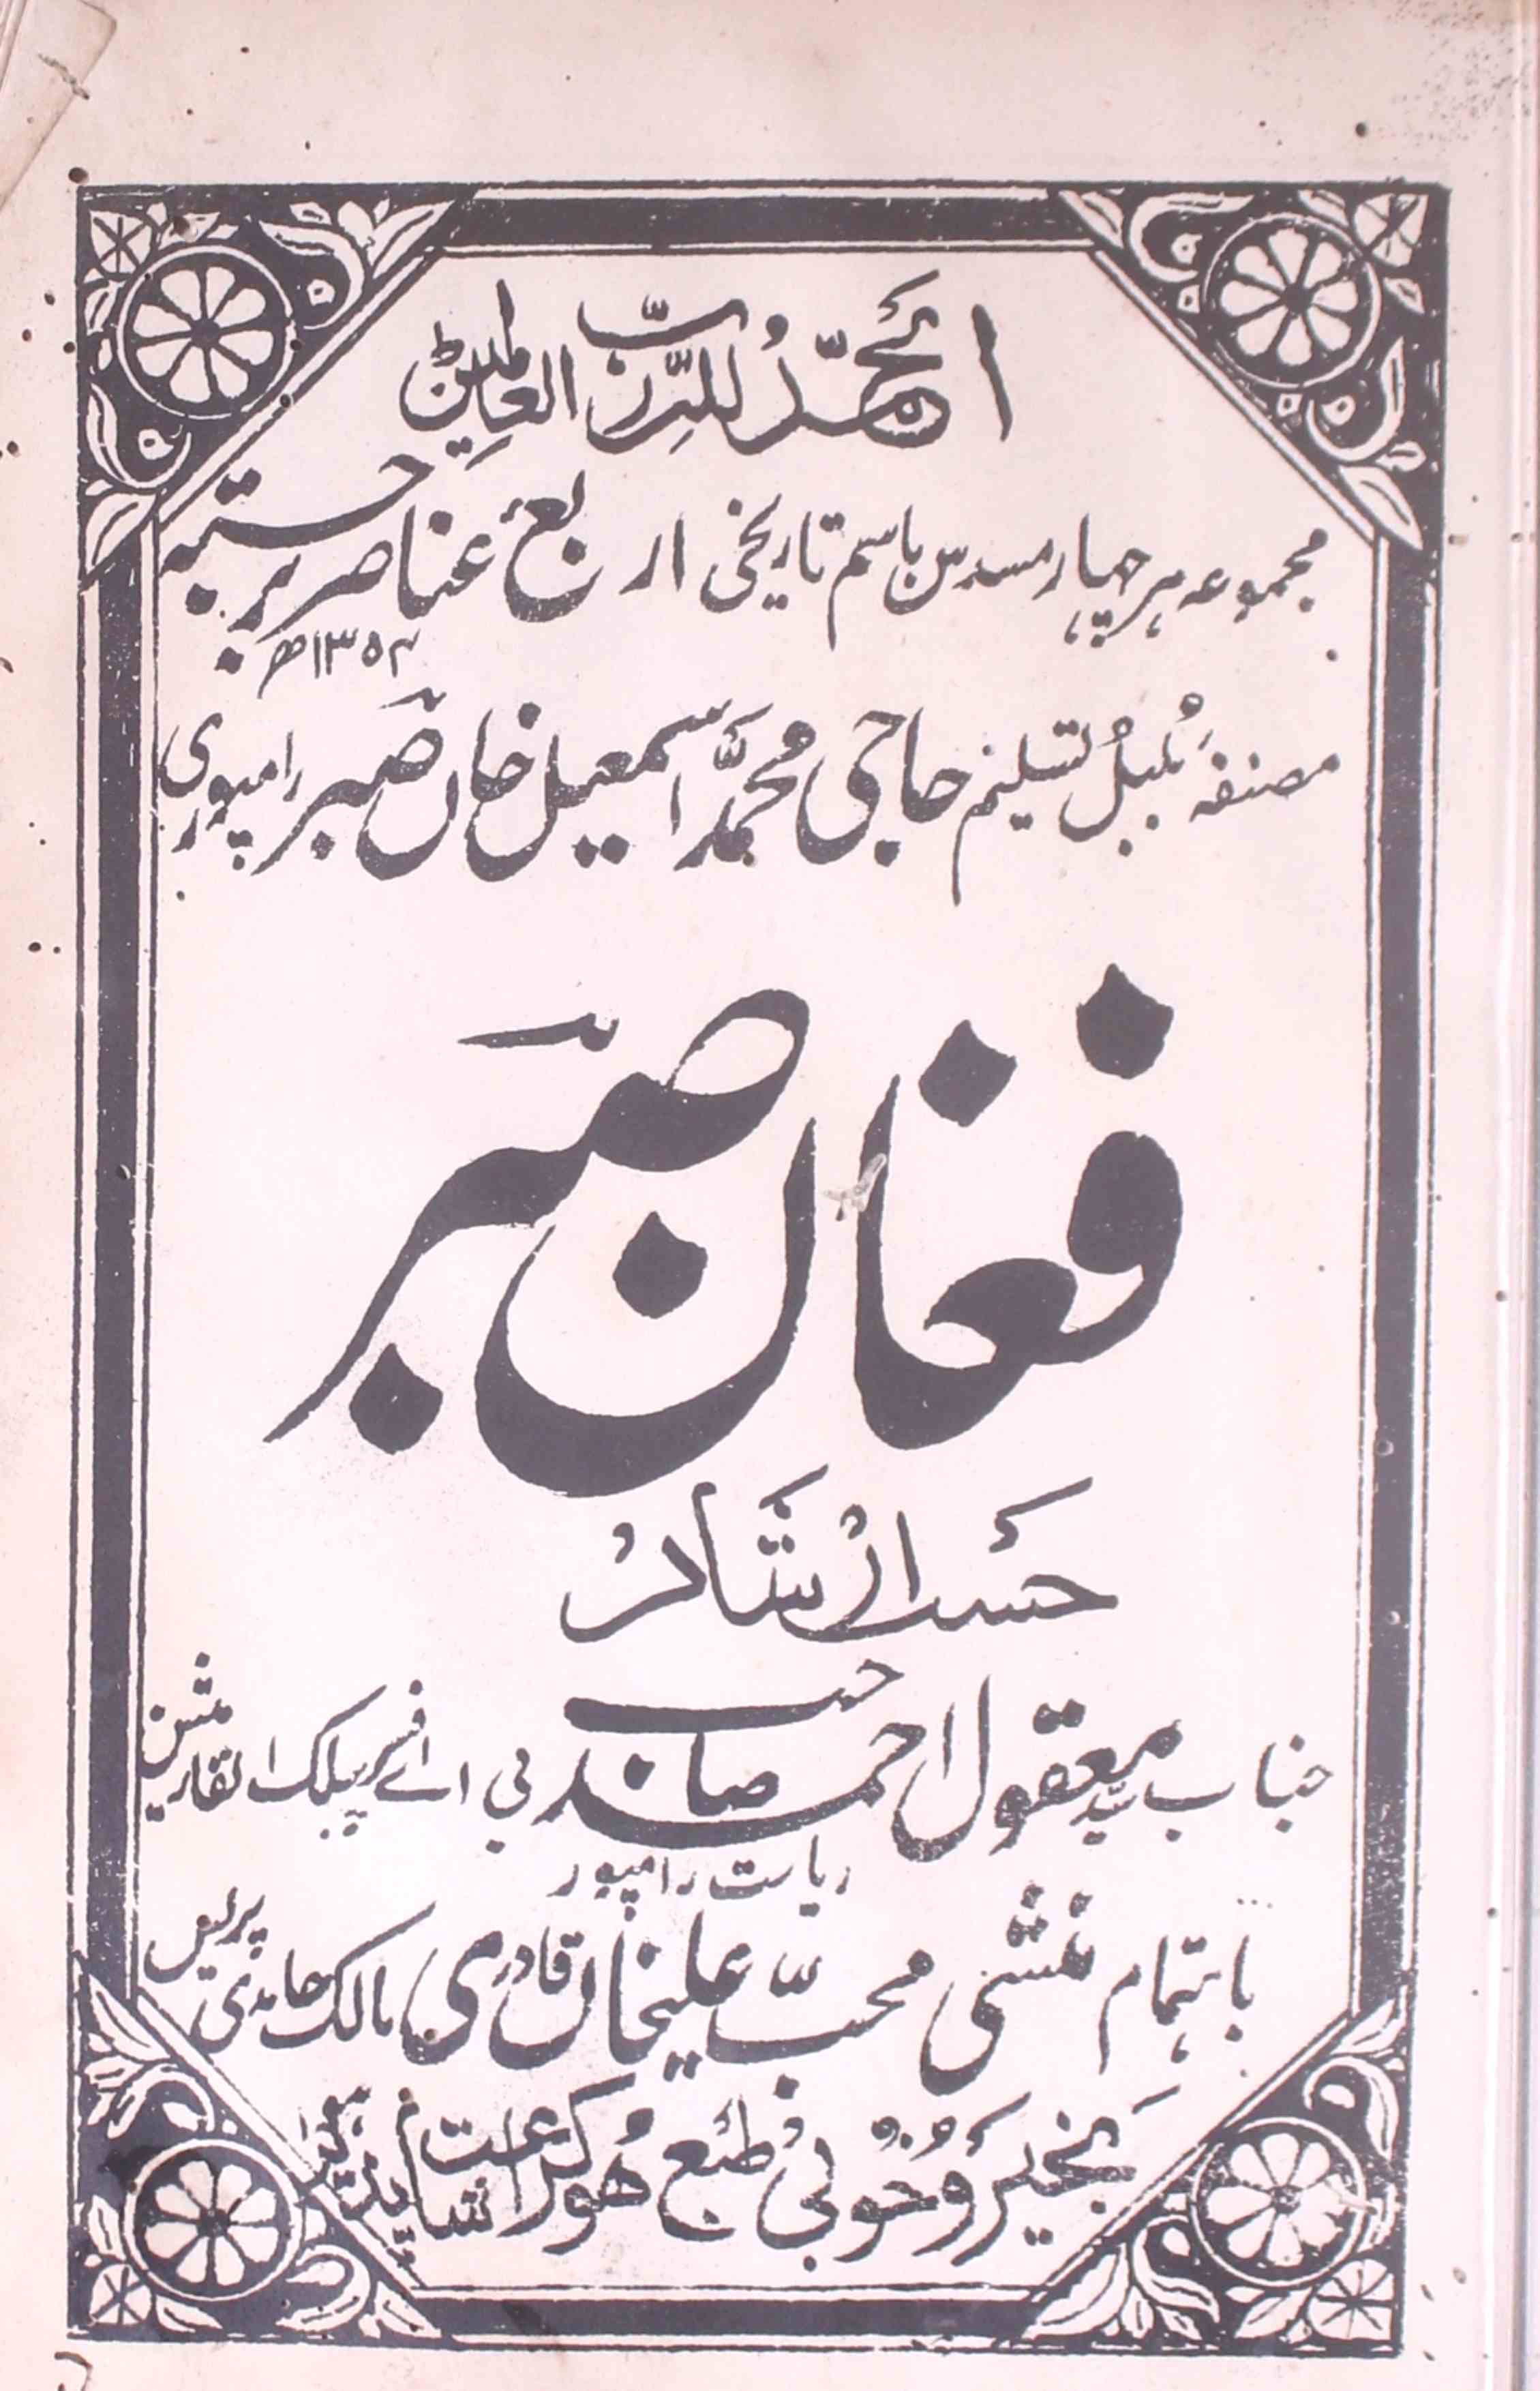 Fughan-e-Sabr